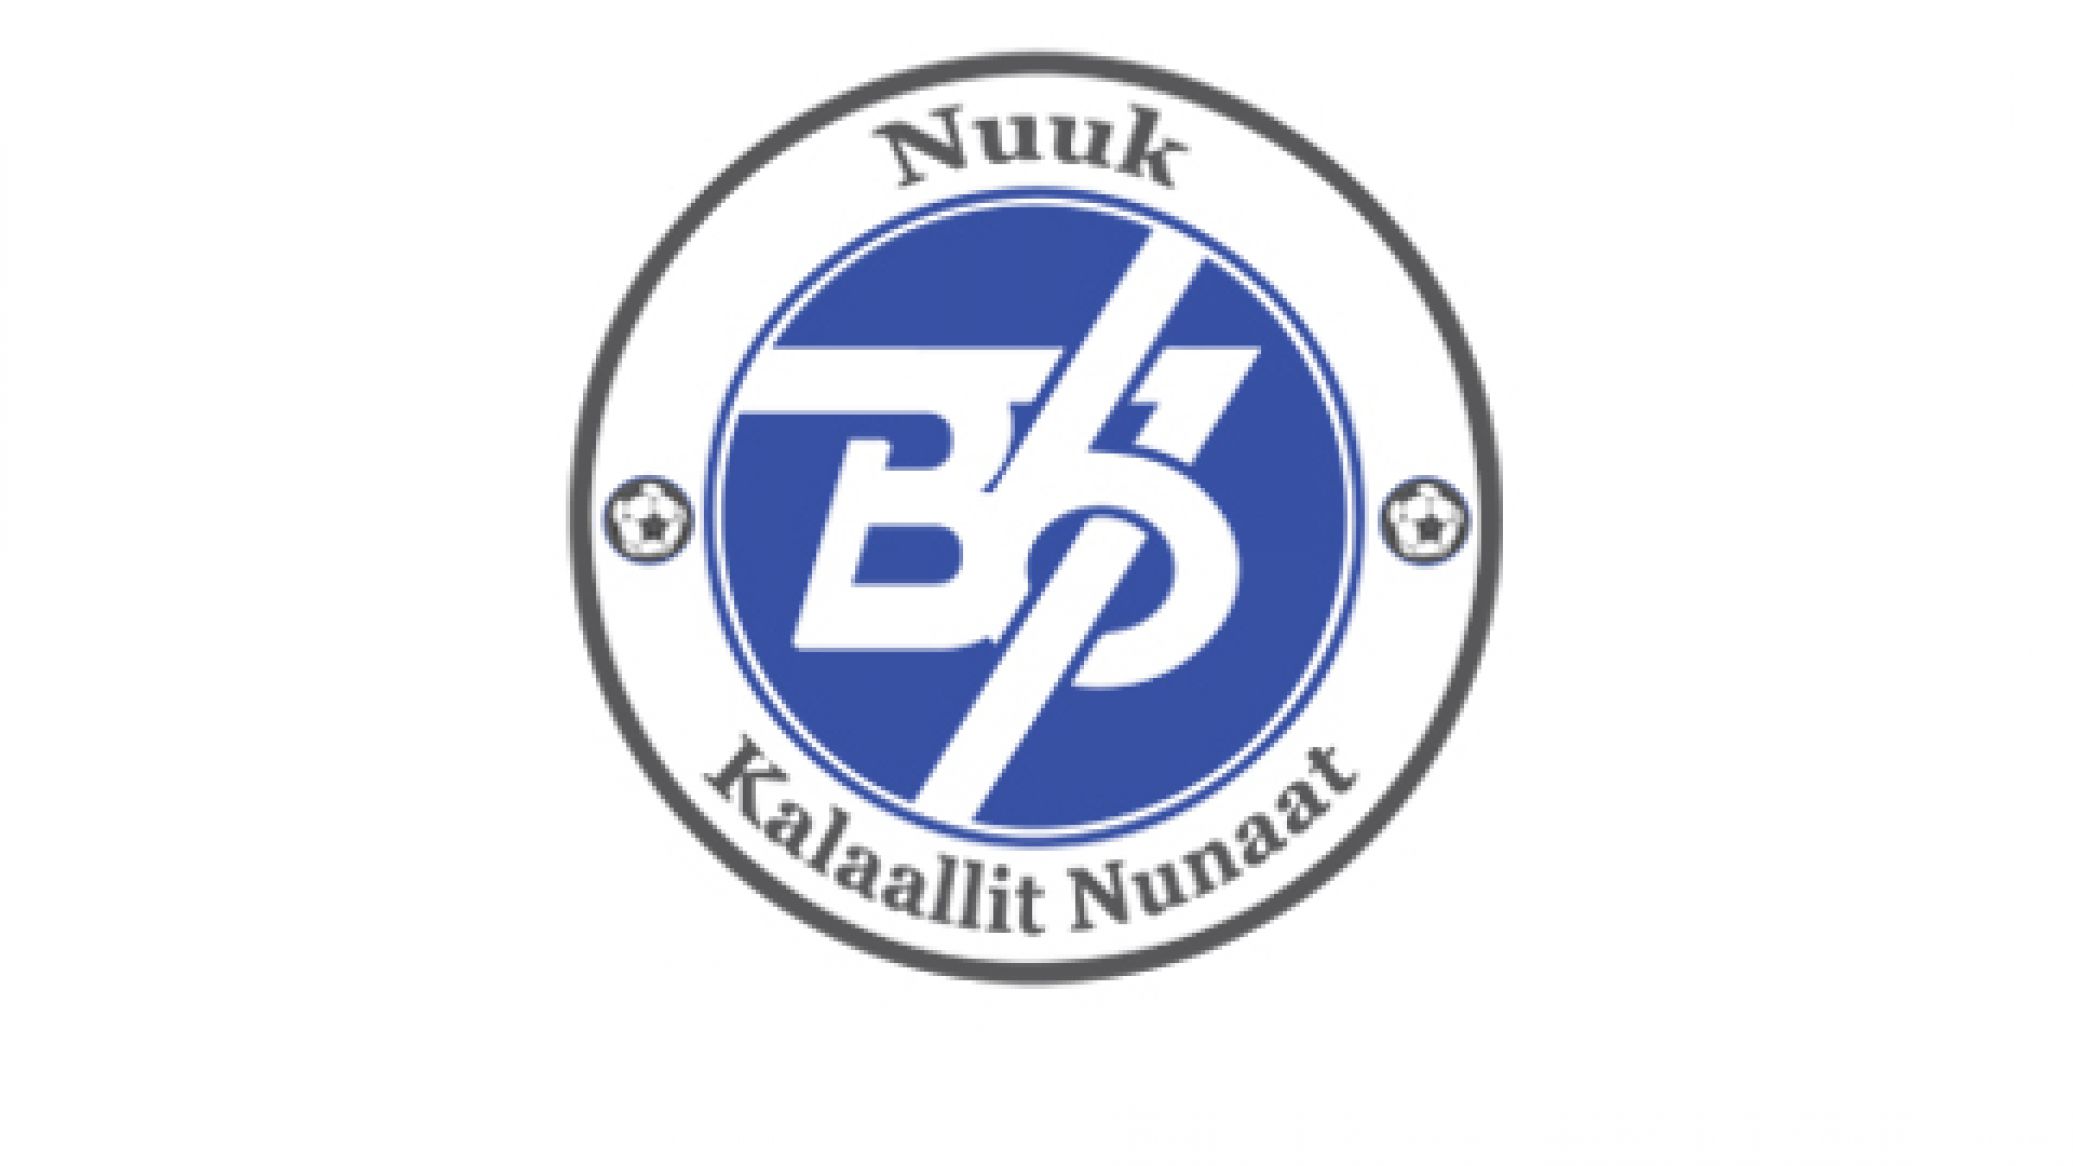 B67 Nuuk